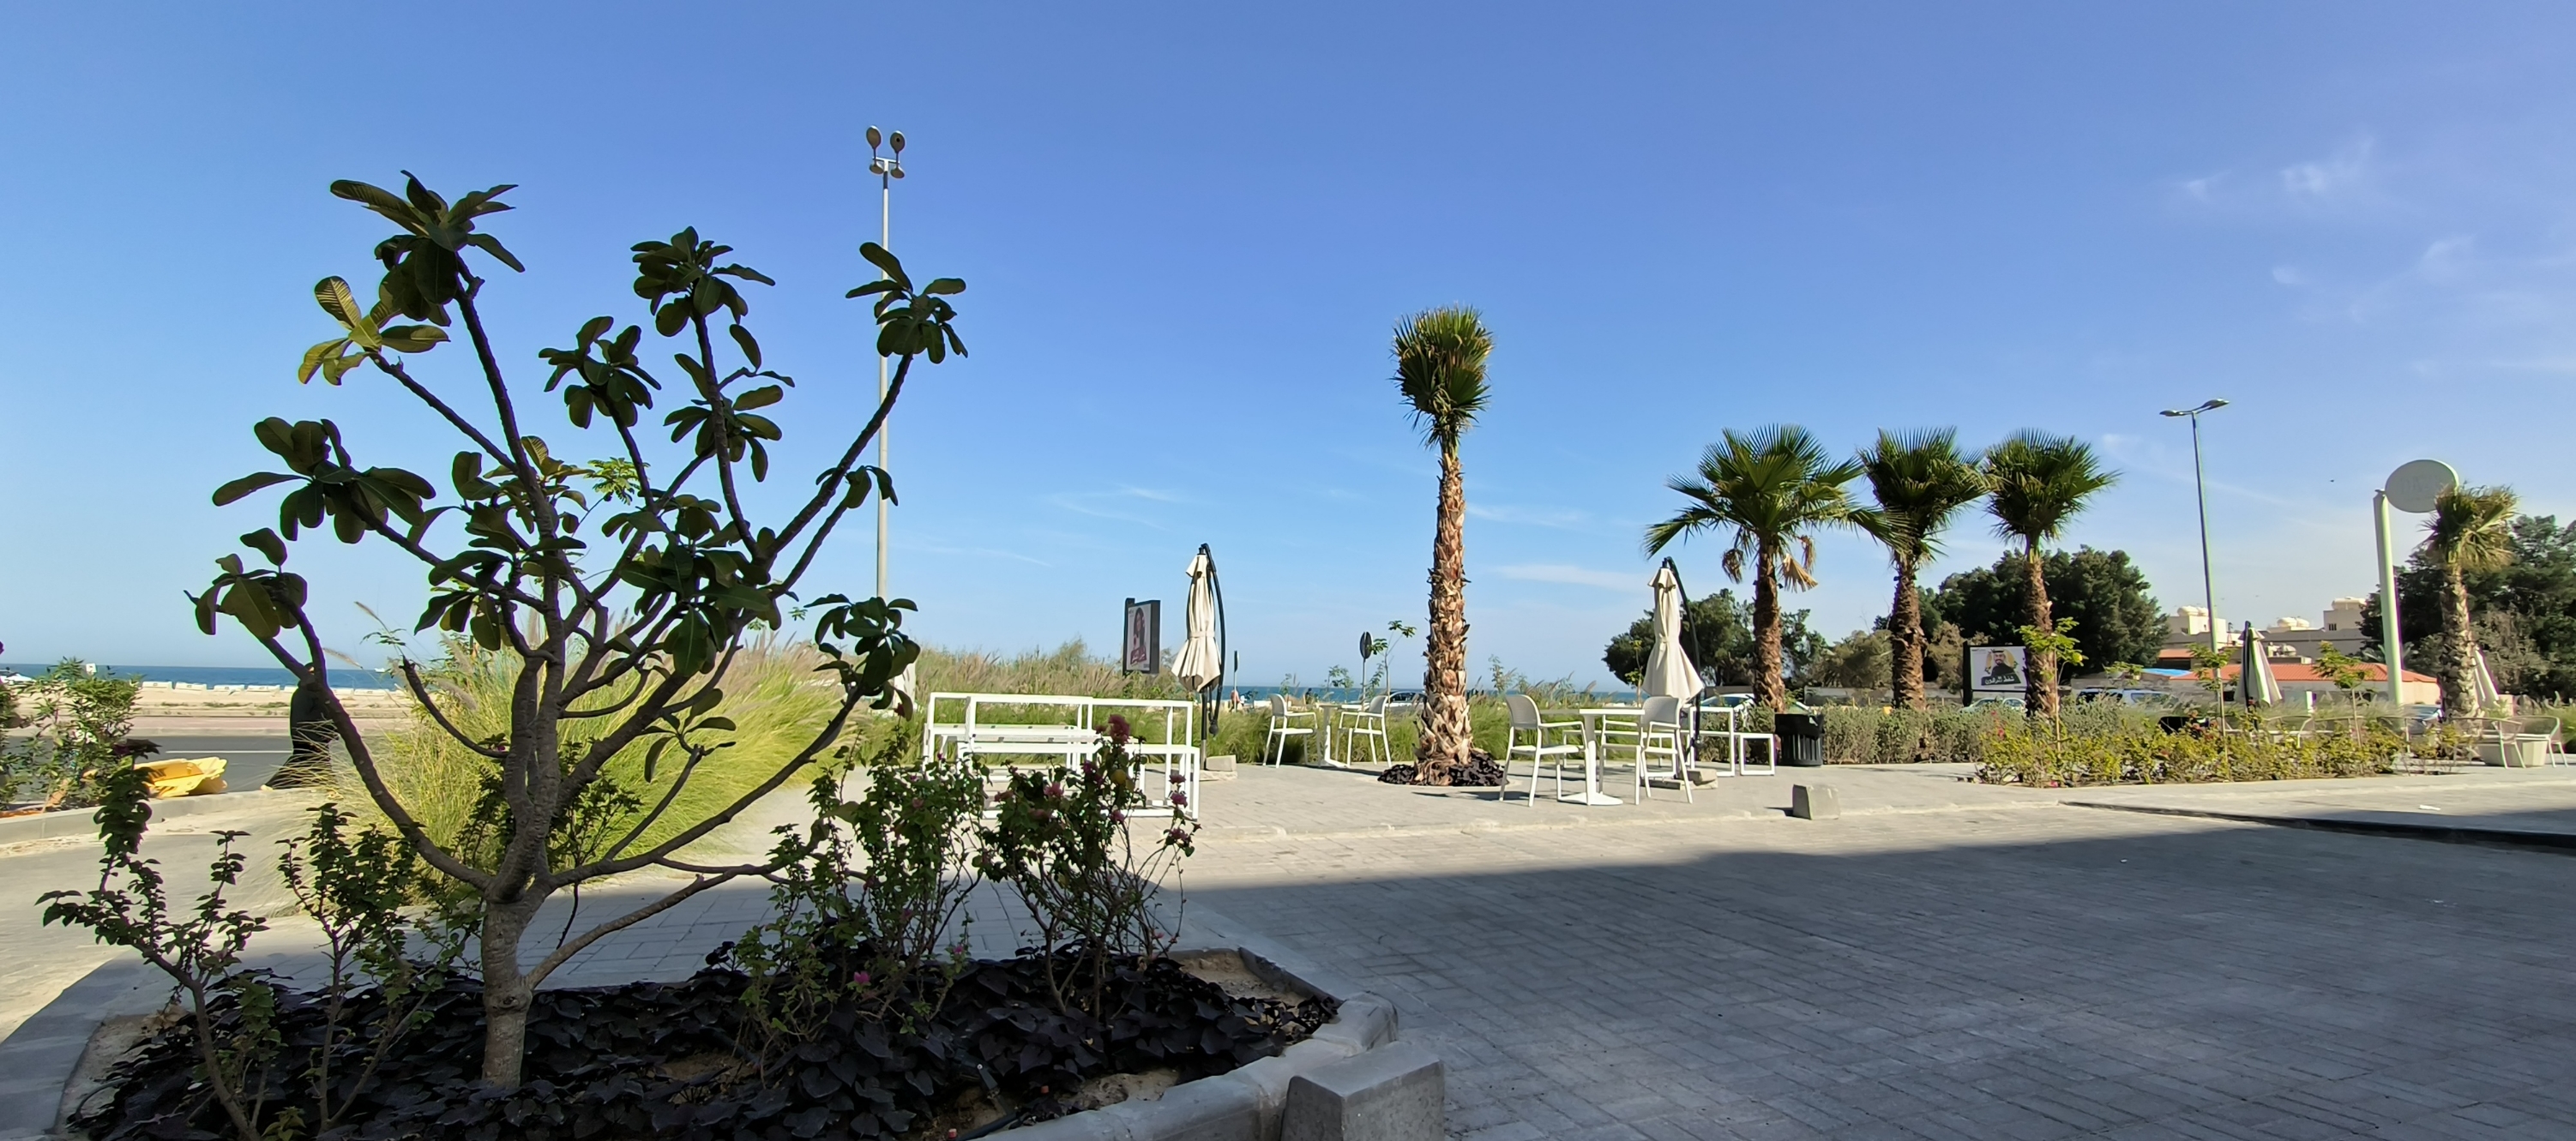 科威特国家，中东土豪国家。海岸线绵长。曼卡夫希尔顿酒店，游客络绎不绝，棕榈树，沙滩，构成独特的风景。